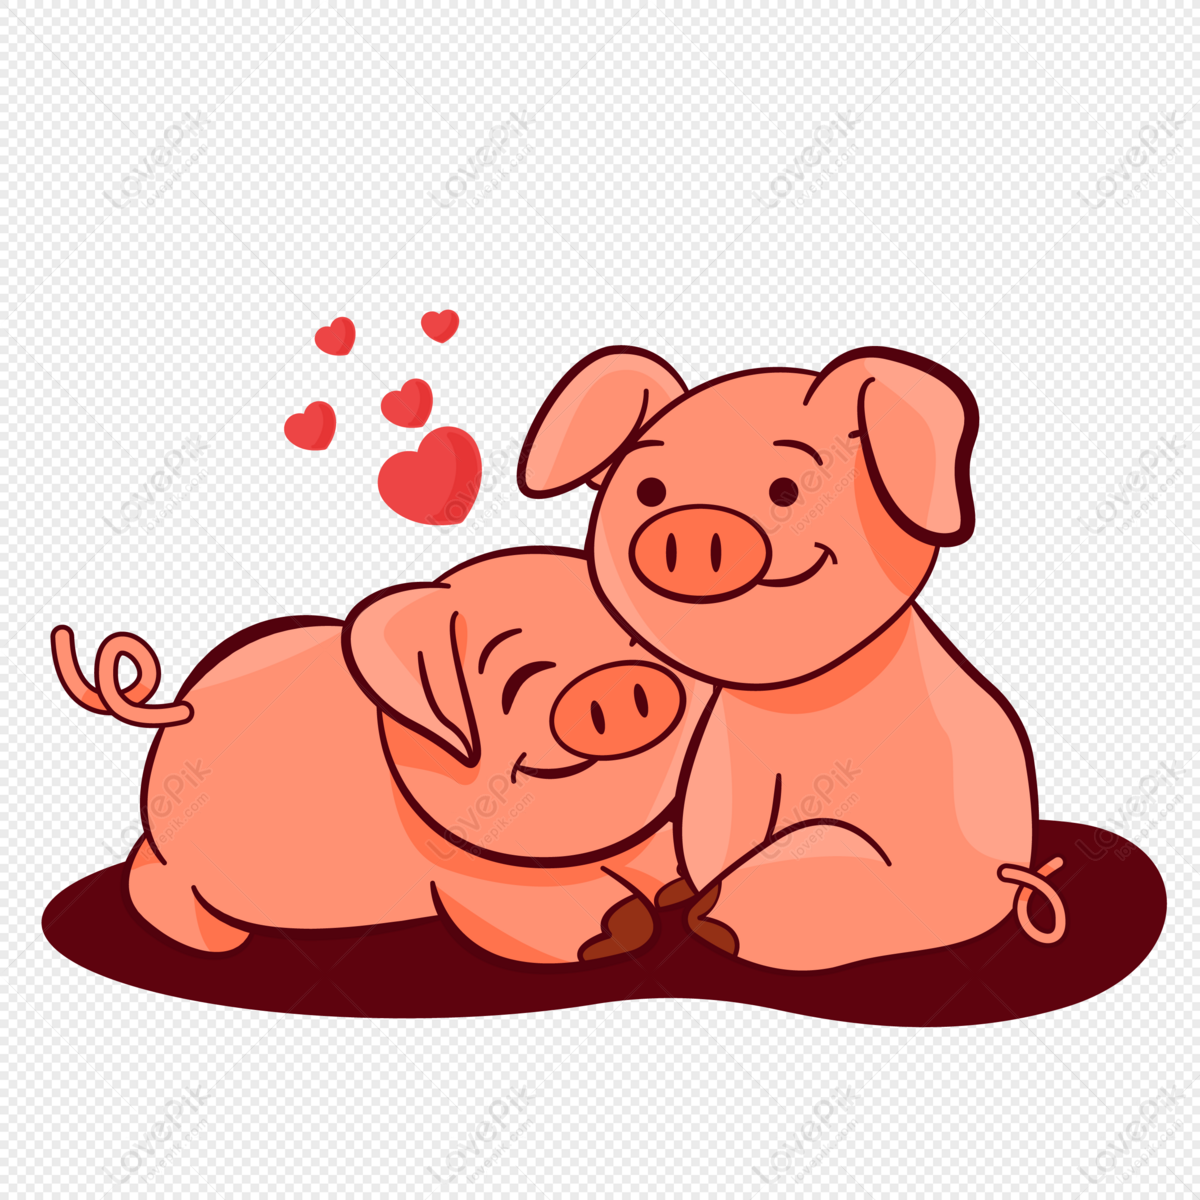 1091+ Hình Ảnh Con Lợn (Heo) Hài Ngộ Nghĩnh, Cute Nhất Hệ